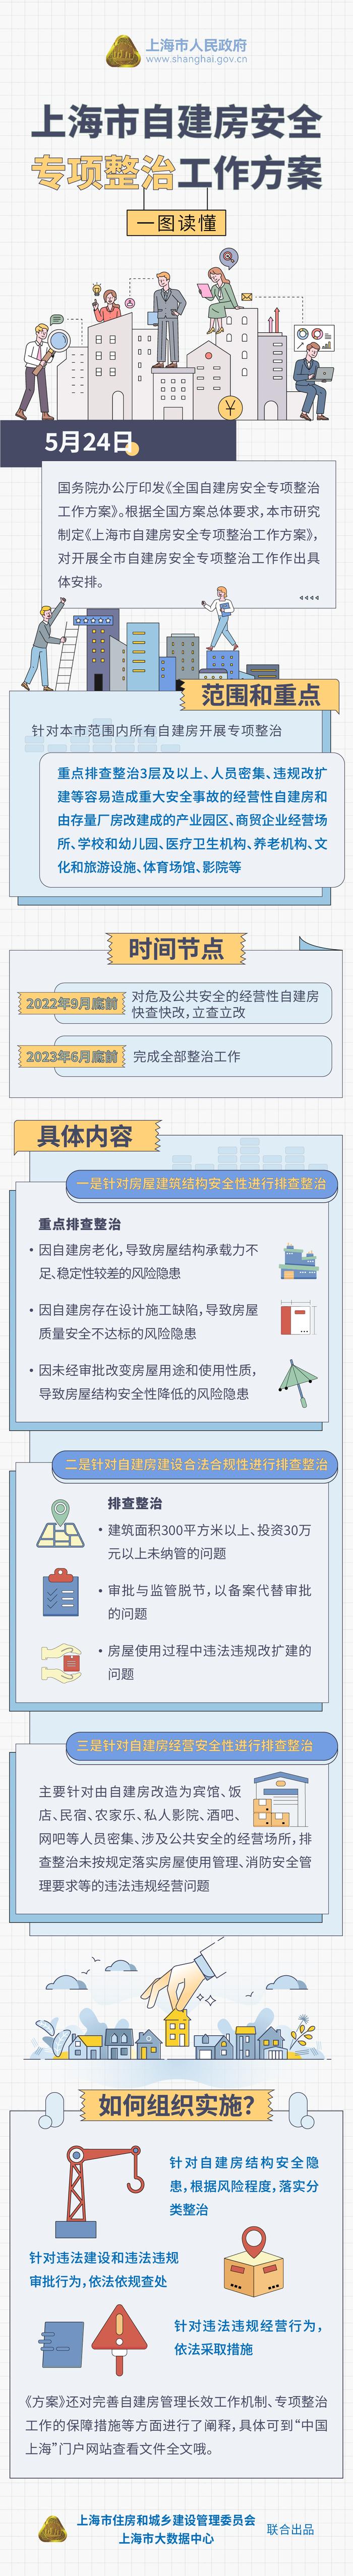 【图解】一图读懂《上海市自建房安全专项整治工作方案》